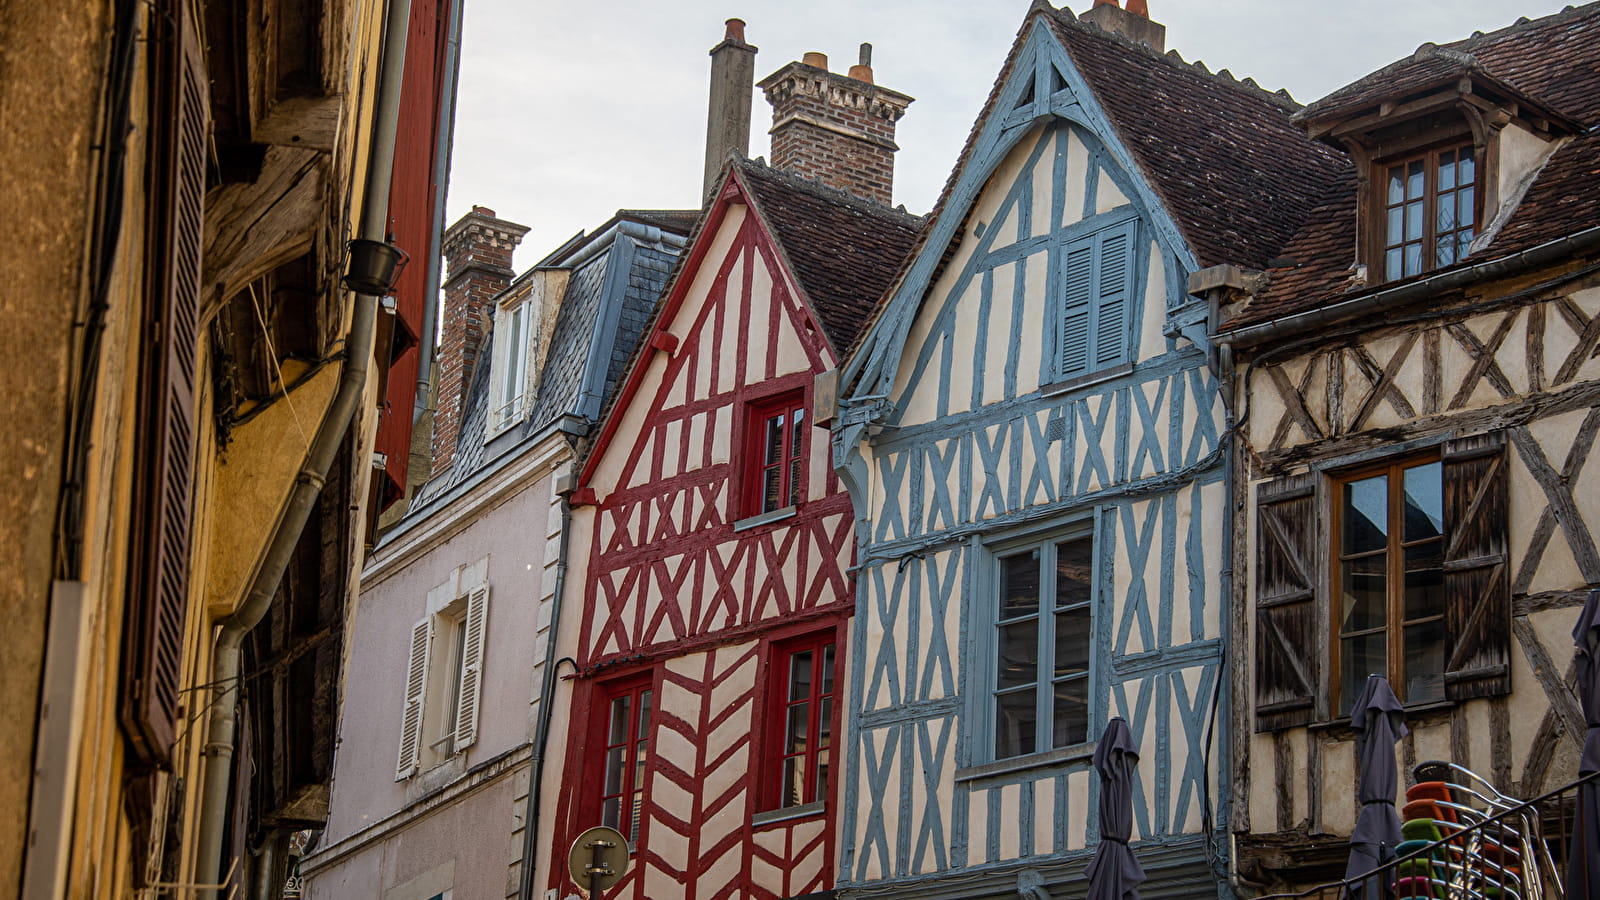 Rondleiding - De mooiste huizen van Auxerre